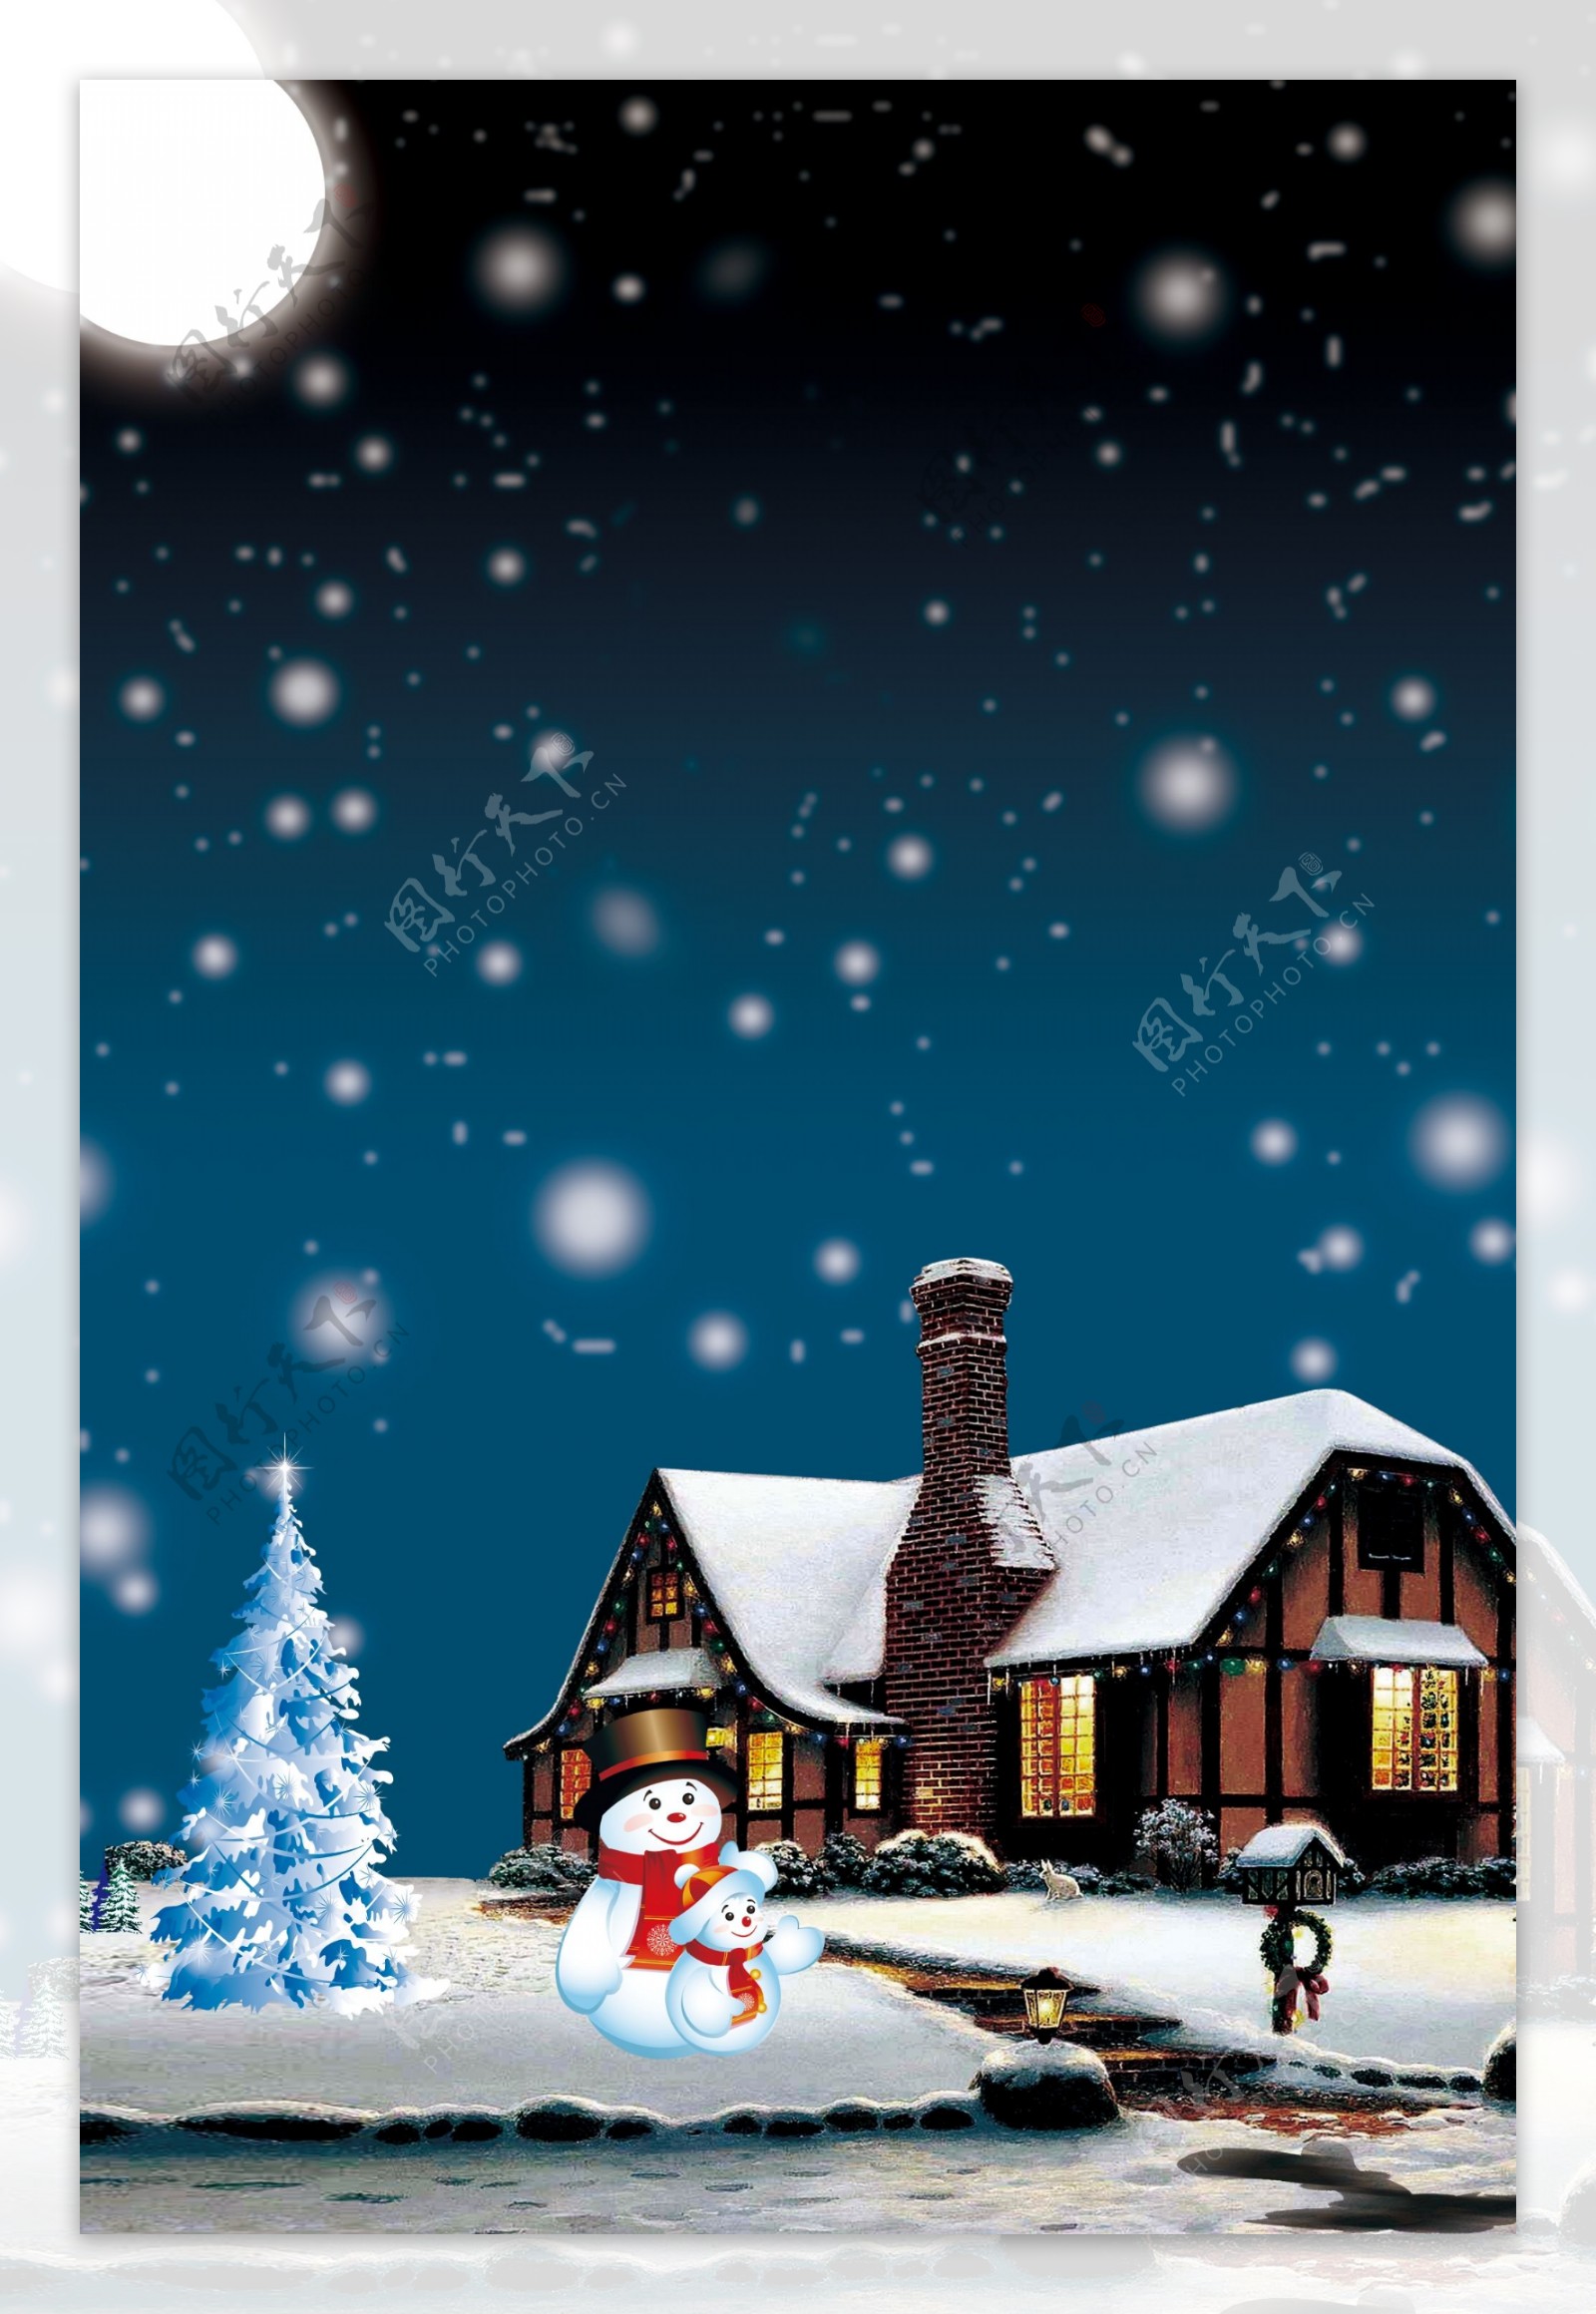 下雪的圣诞节背景素材